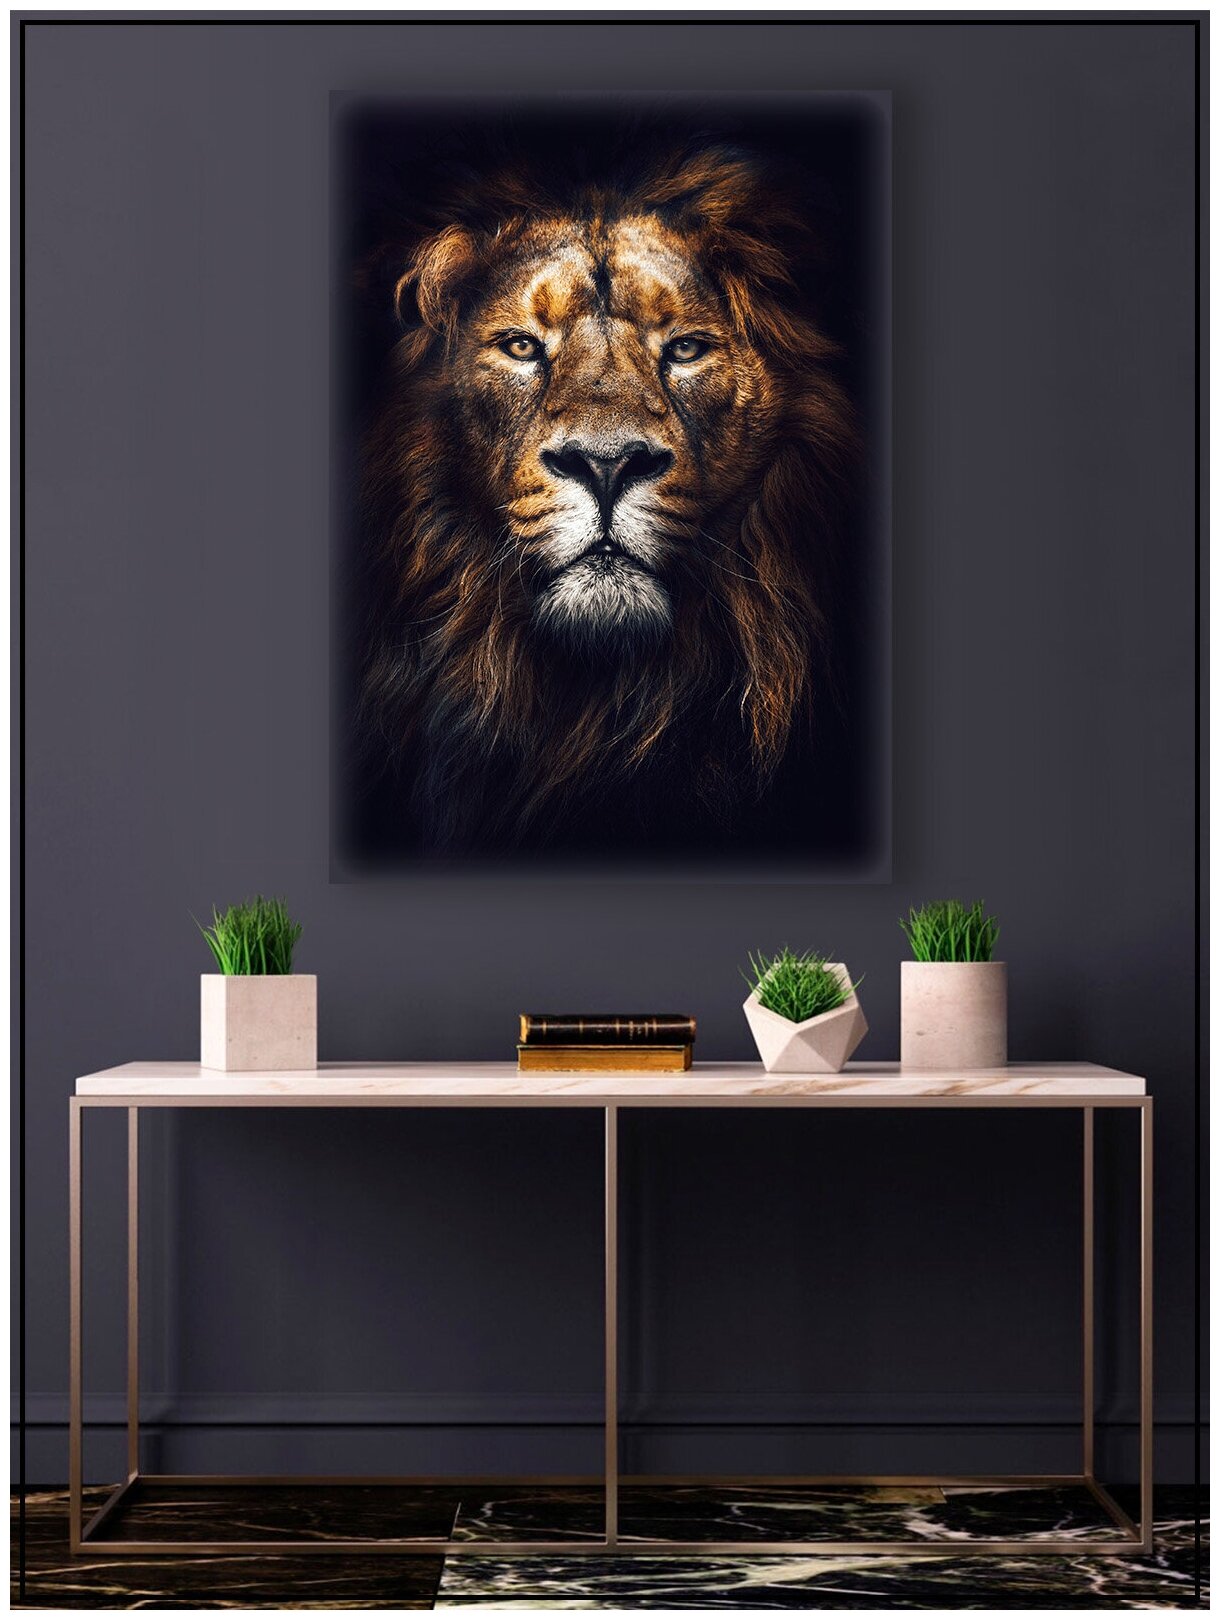 Картина для интерьера на натуральном хлопковом холсте "Лев", 30*40см, холст на подрамнике, картина в подарок для дома